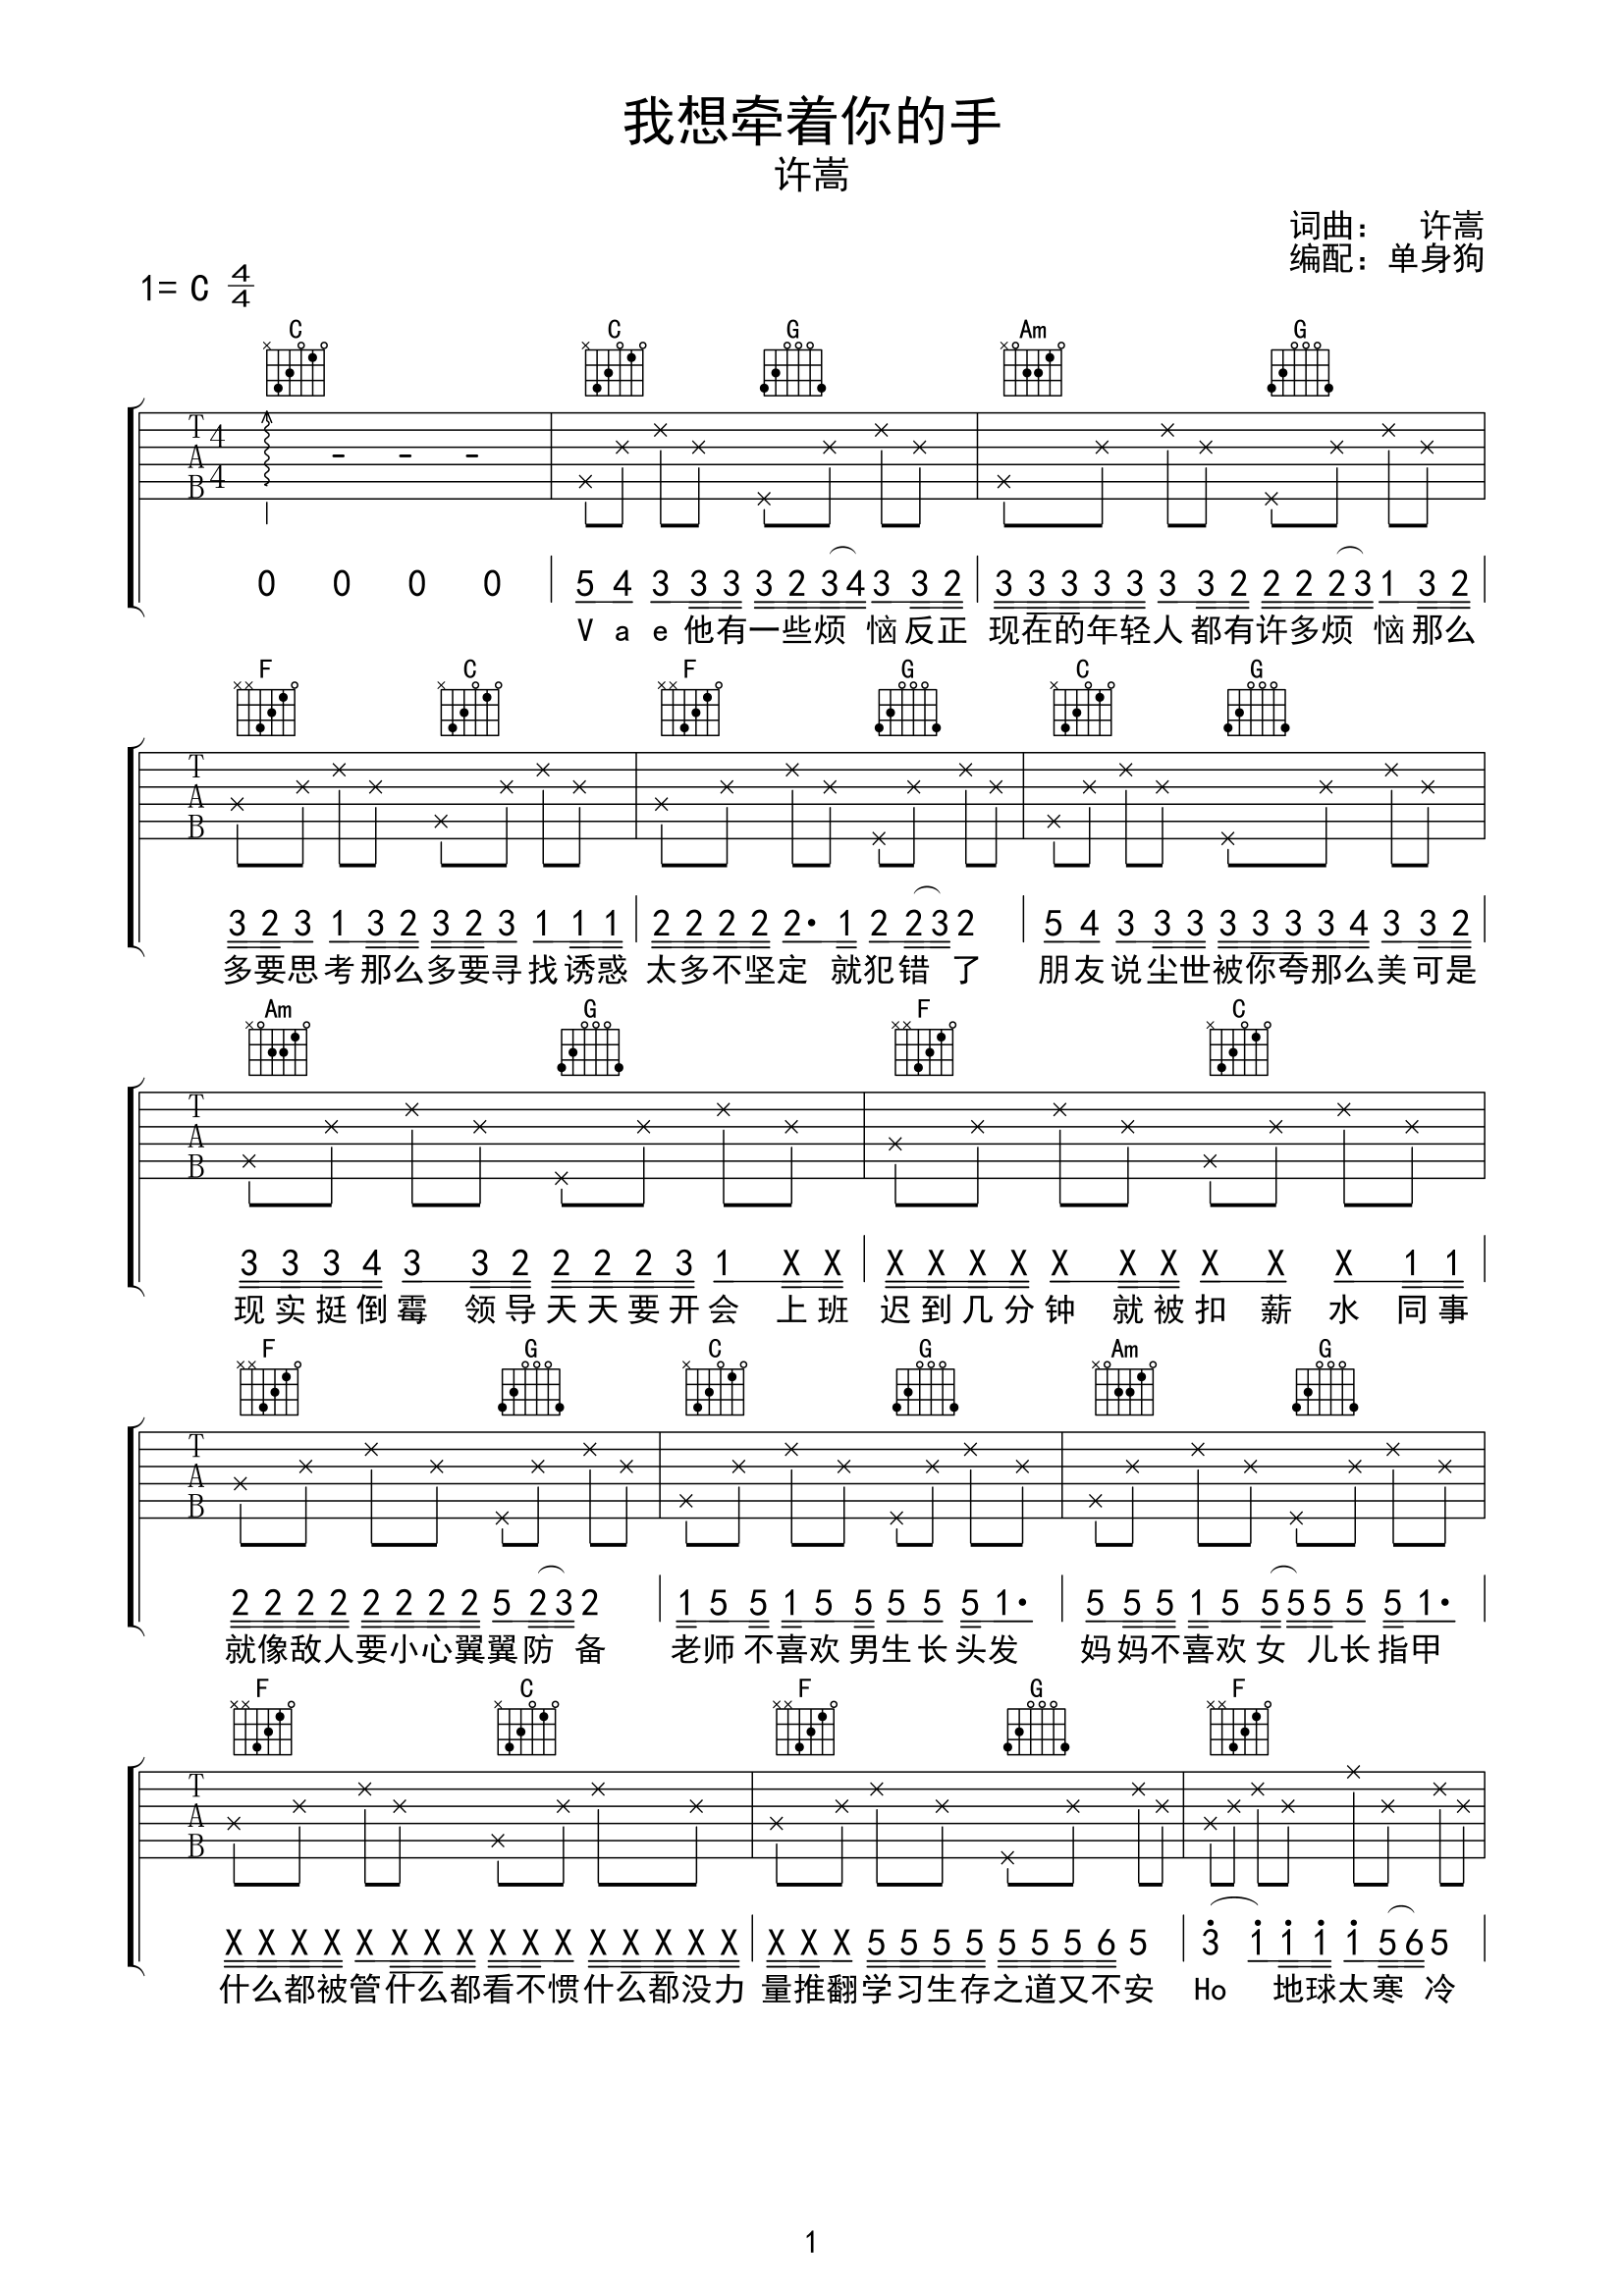 大欢【多想再次牵你的手吉他谱】_在线免费打印下载-爱弹琴乐谱网